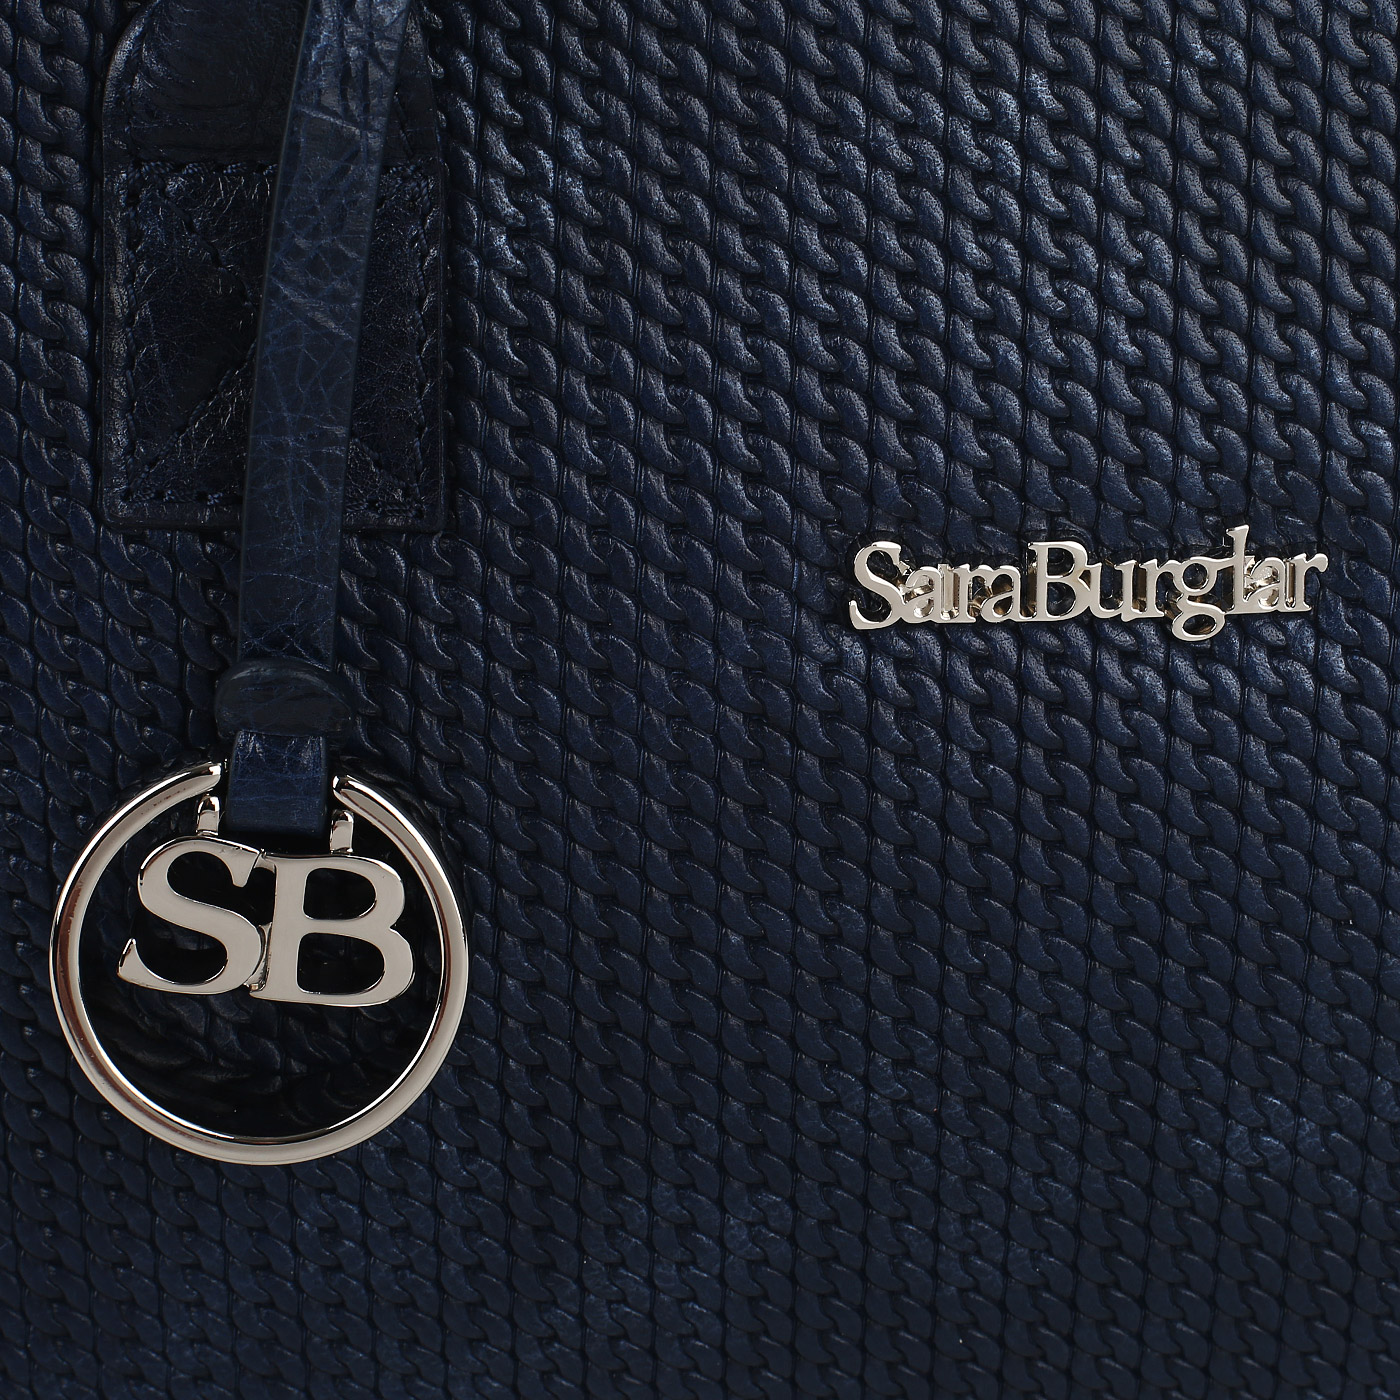 Тиснёная сумка с фирменным брелком Sara Burglar Regina Land